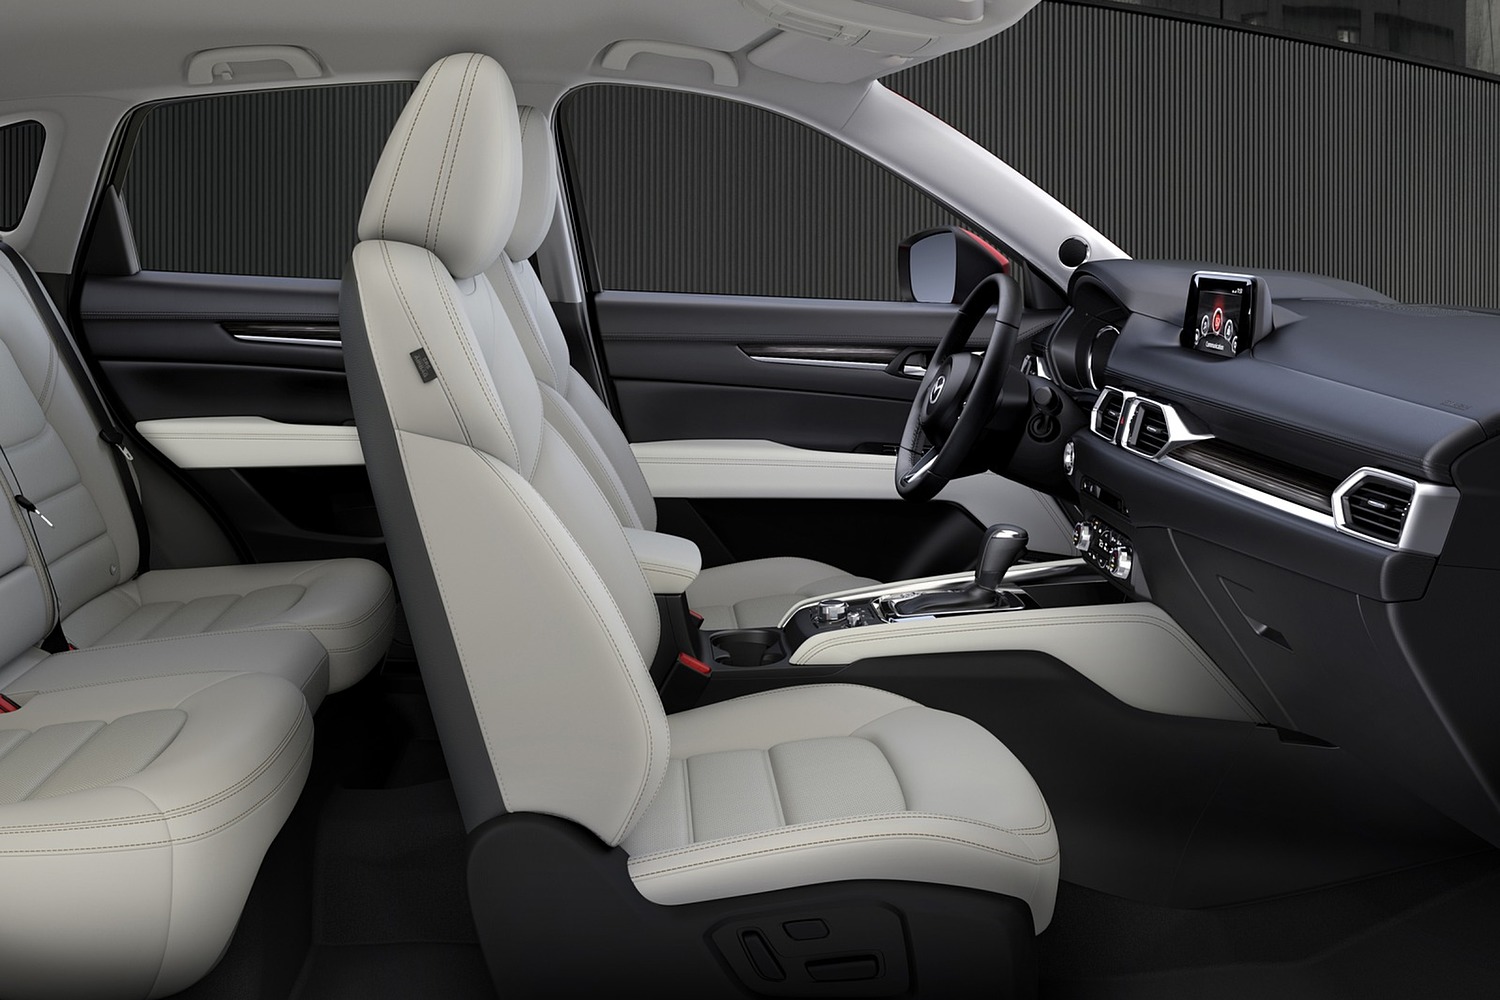 Mazda CX-5 Grand Touring 4dr SUV Interior (2017 model year shown)